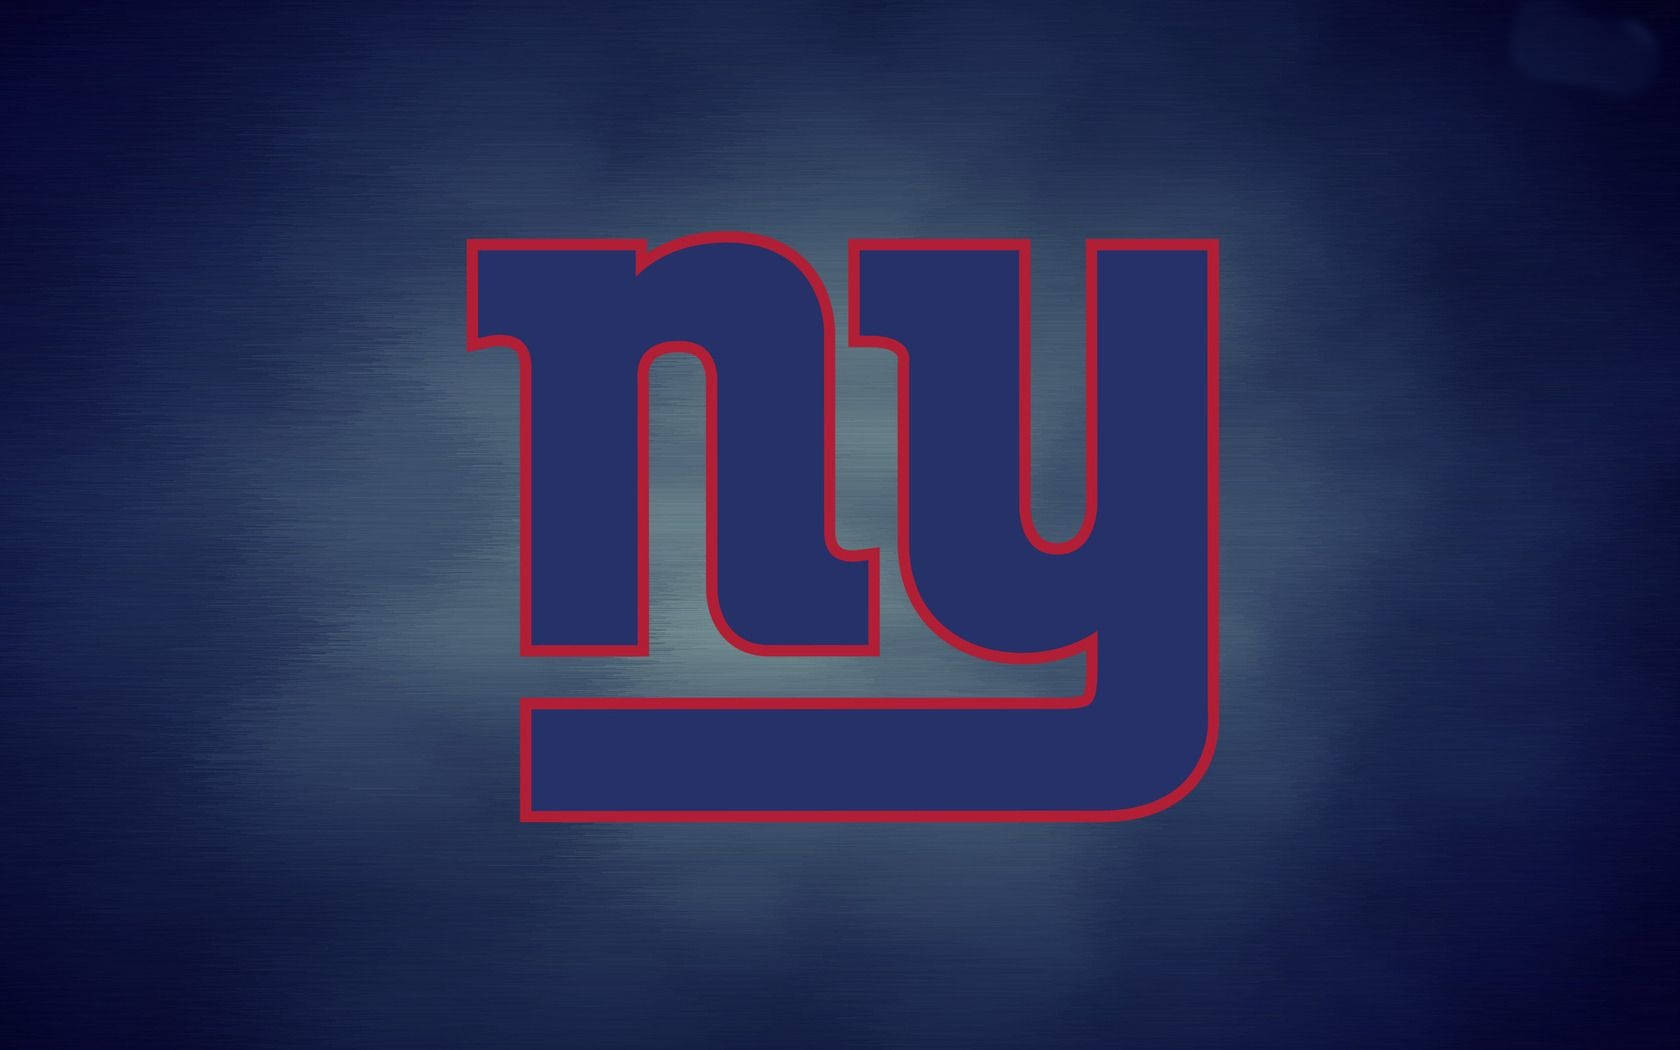 Logotipoescuro Do New York Giants. Papel de Parede